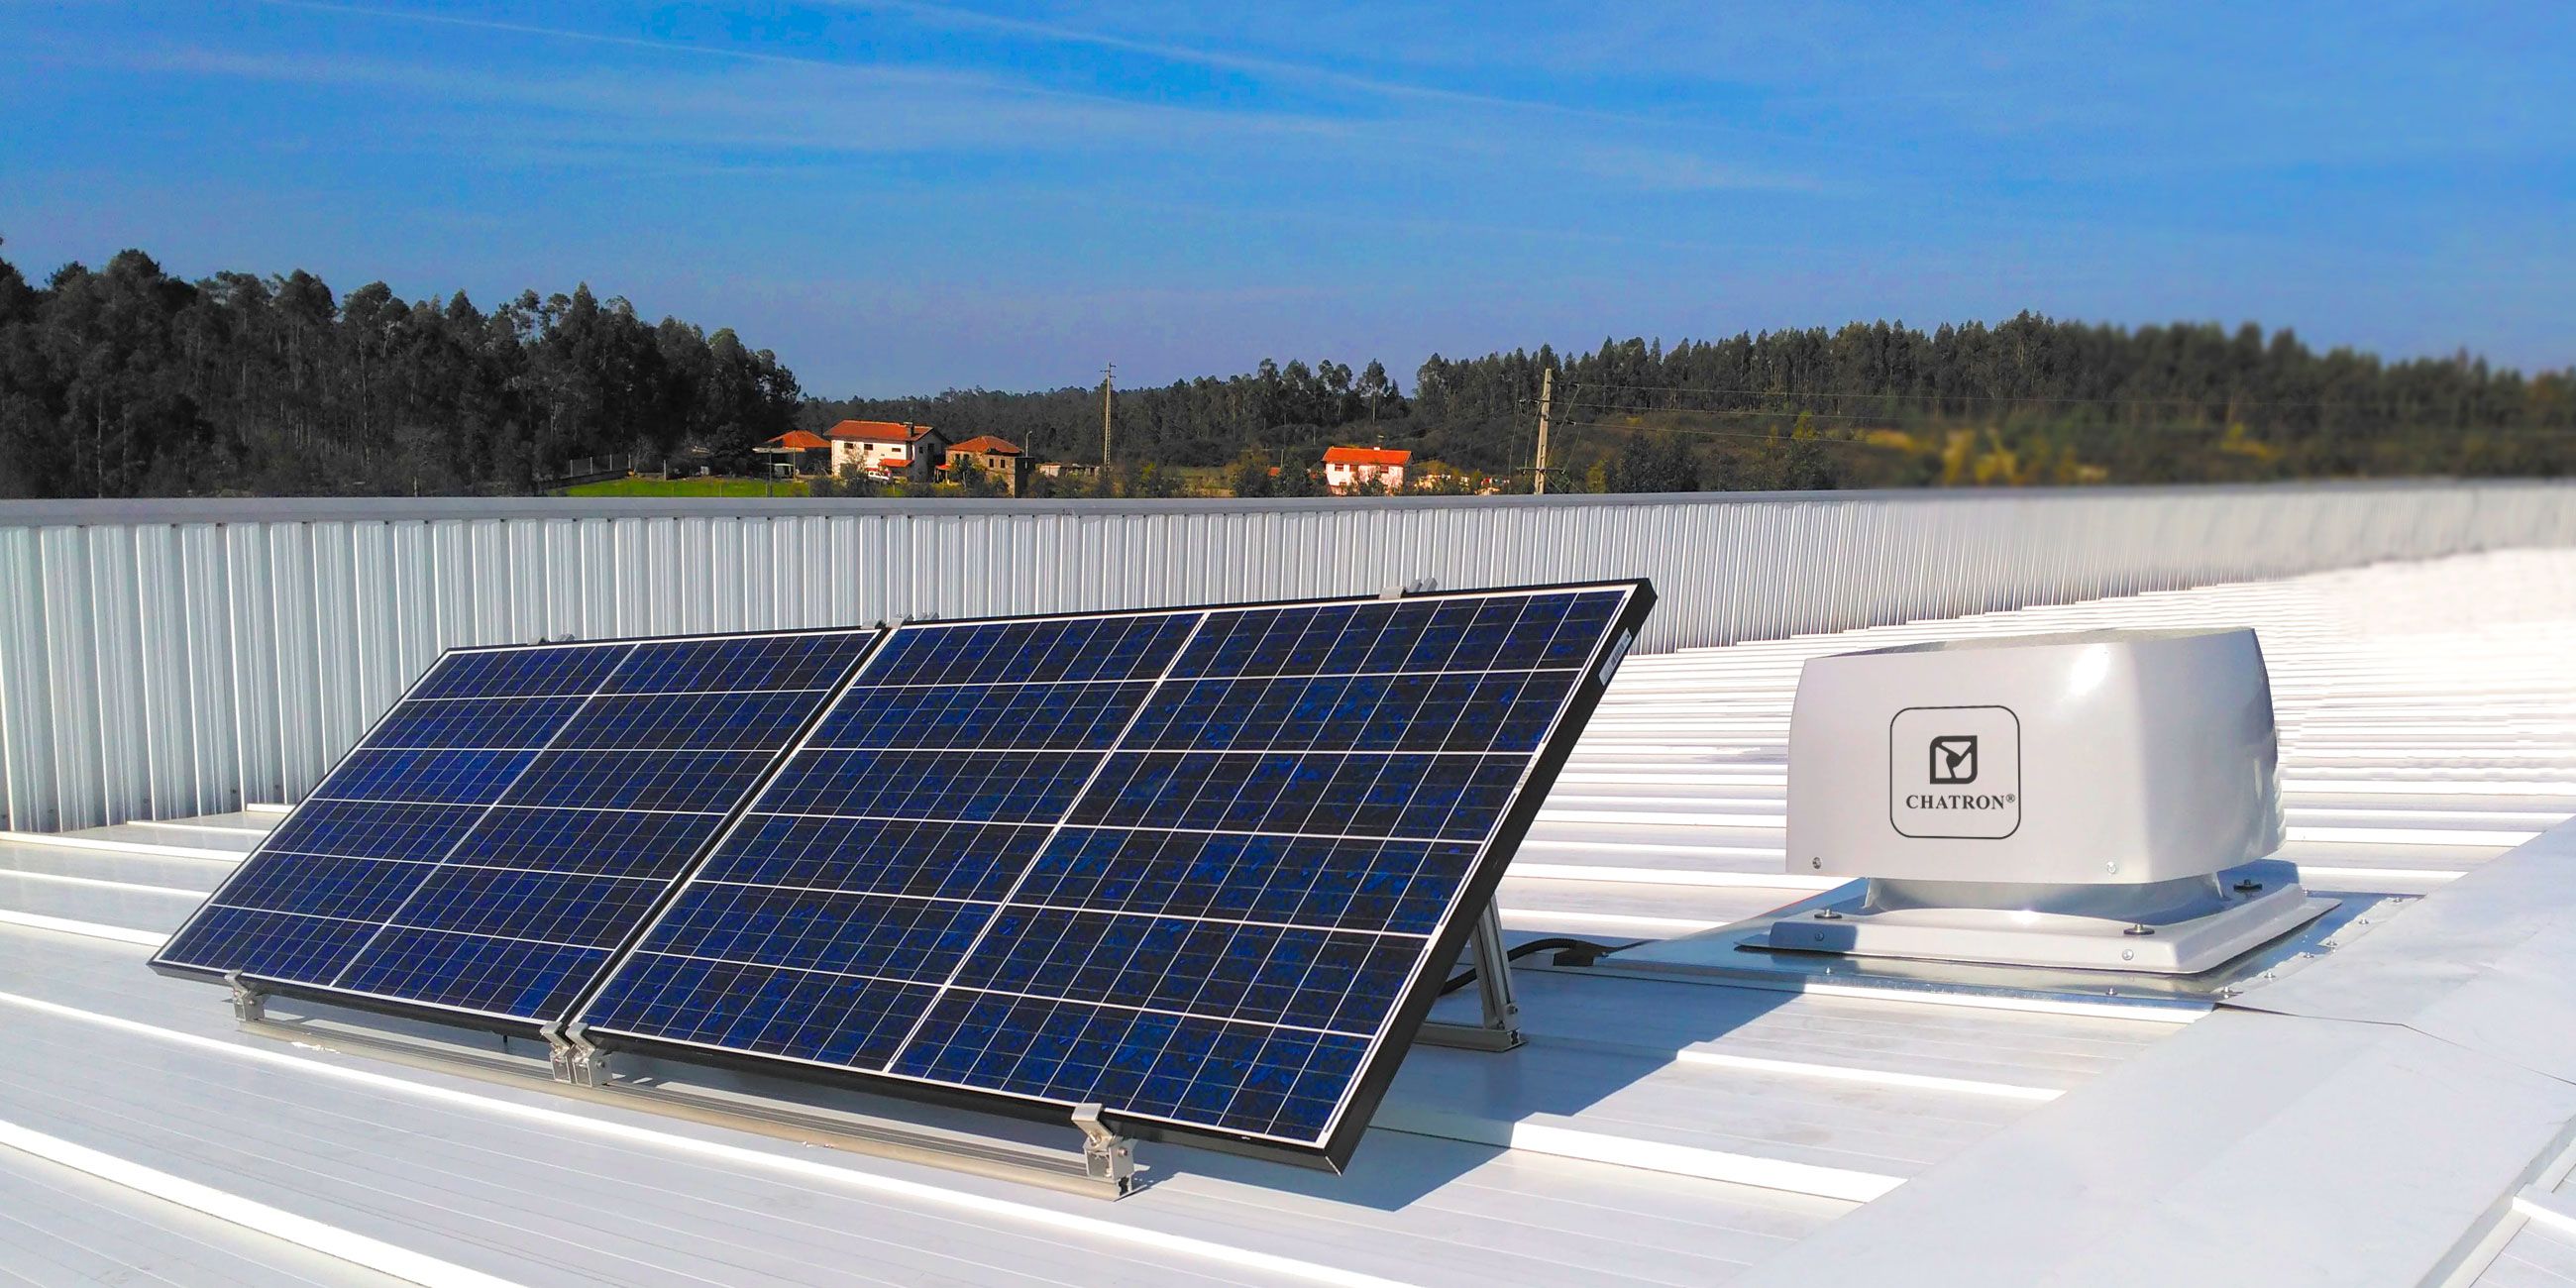 Photovoltaic Solar Fans Ventilators - VT1
